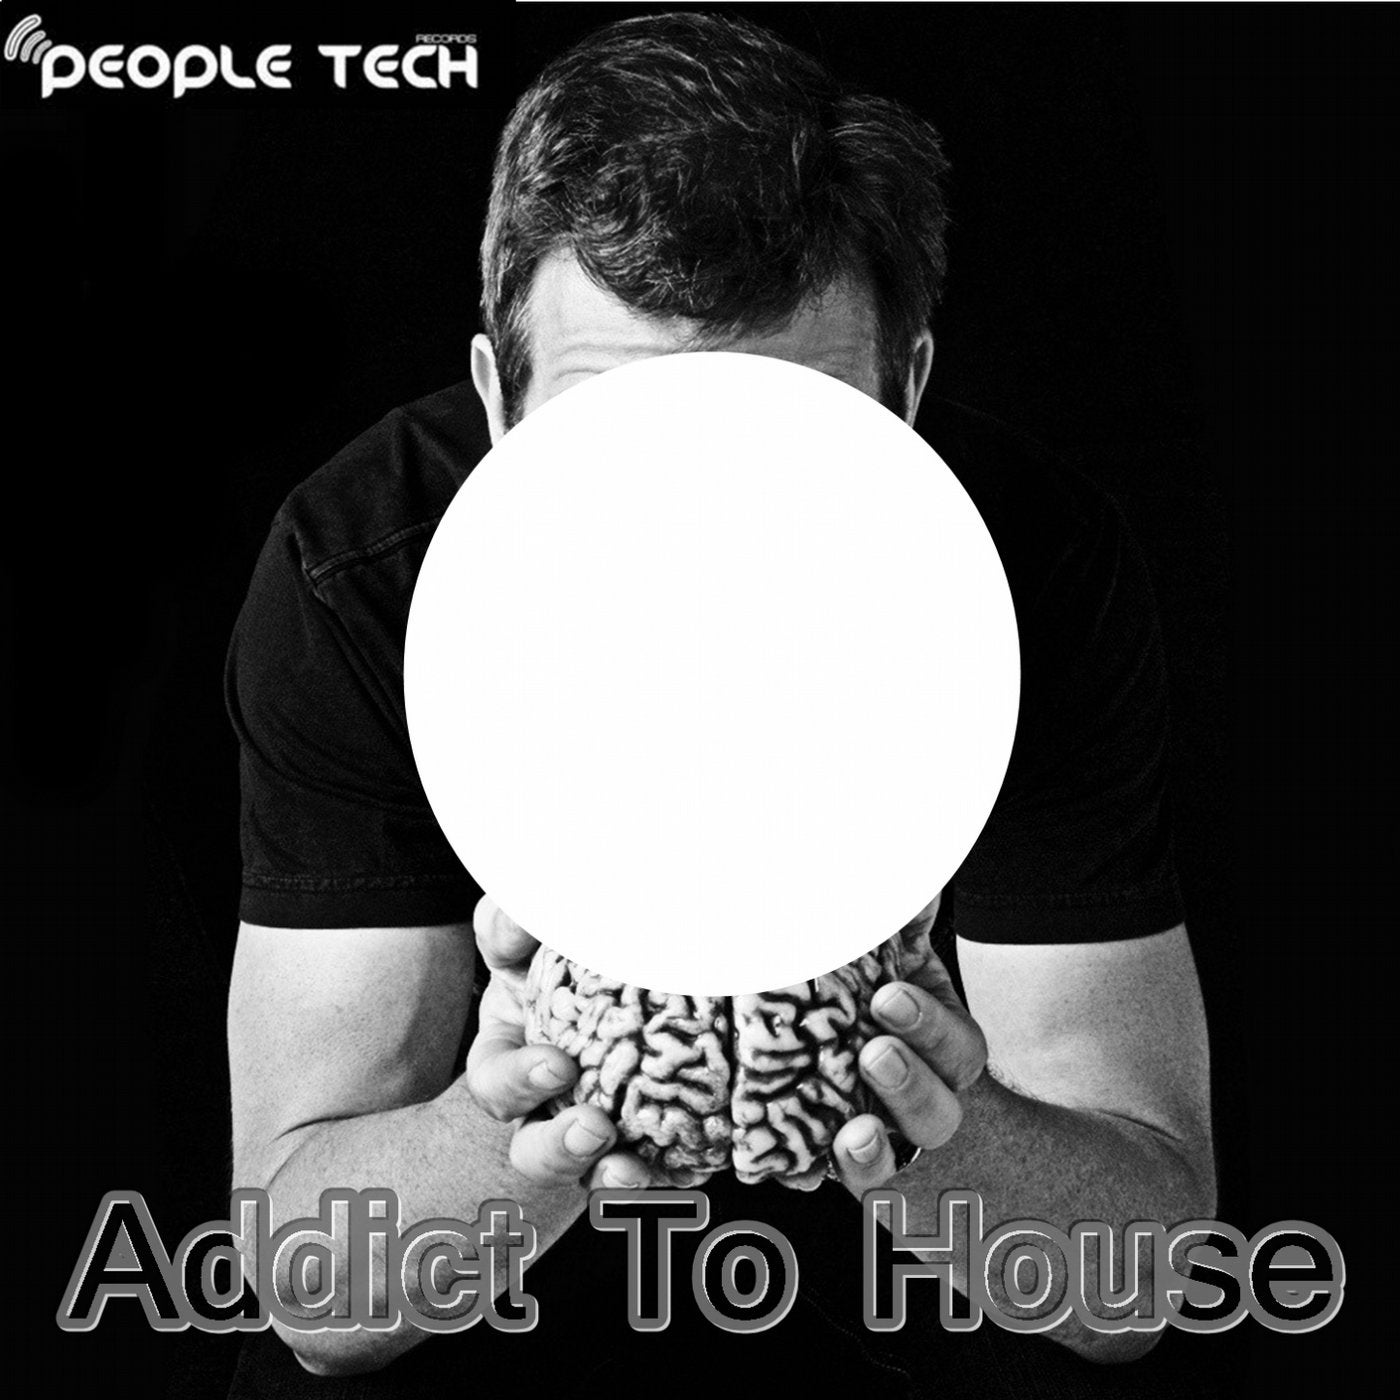 Addict to House